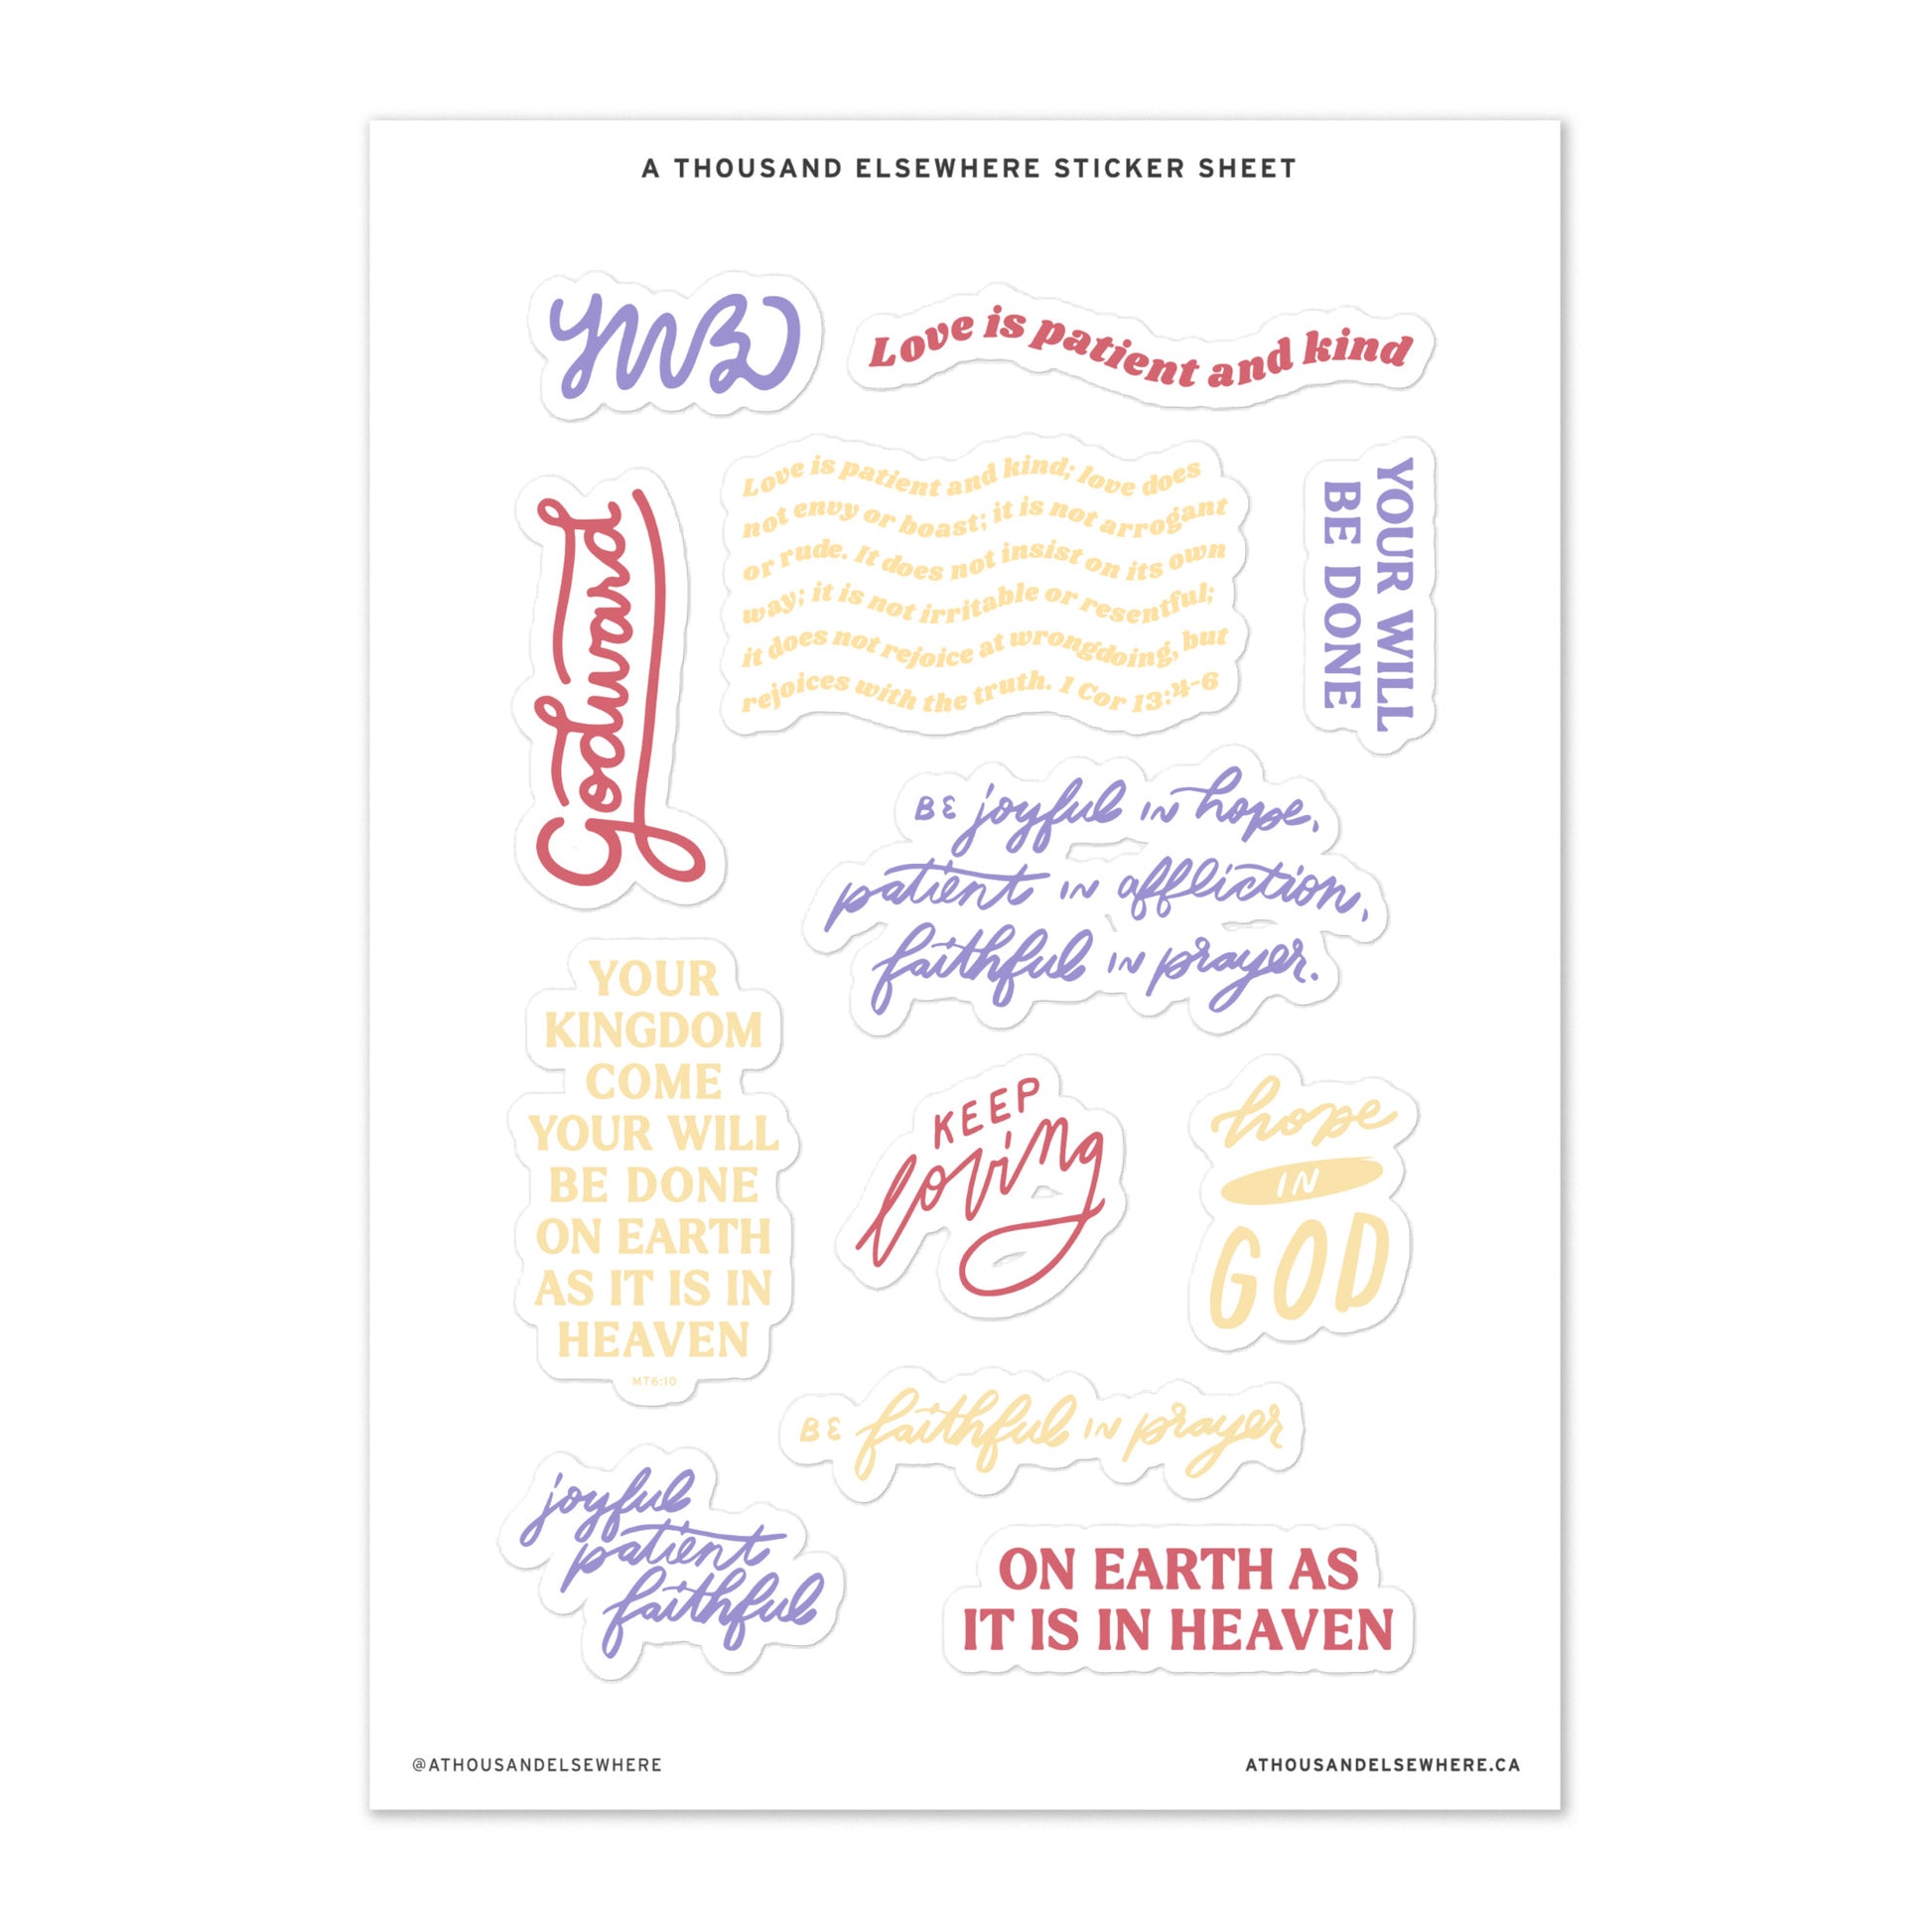 Gospel Sticker Sheet - A Thousand Elsewhere